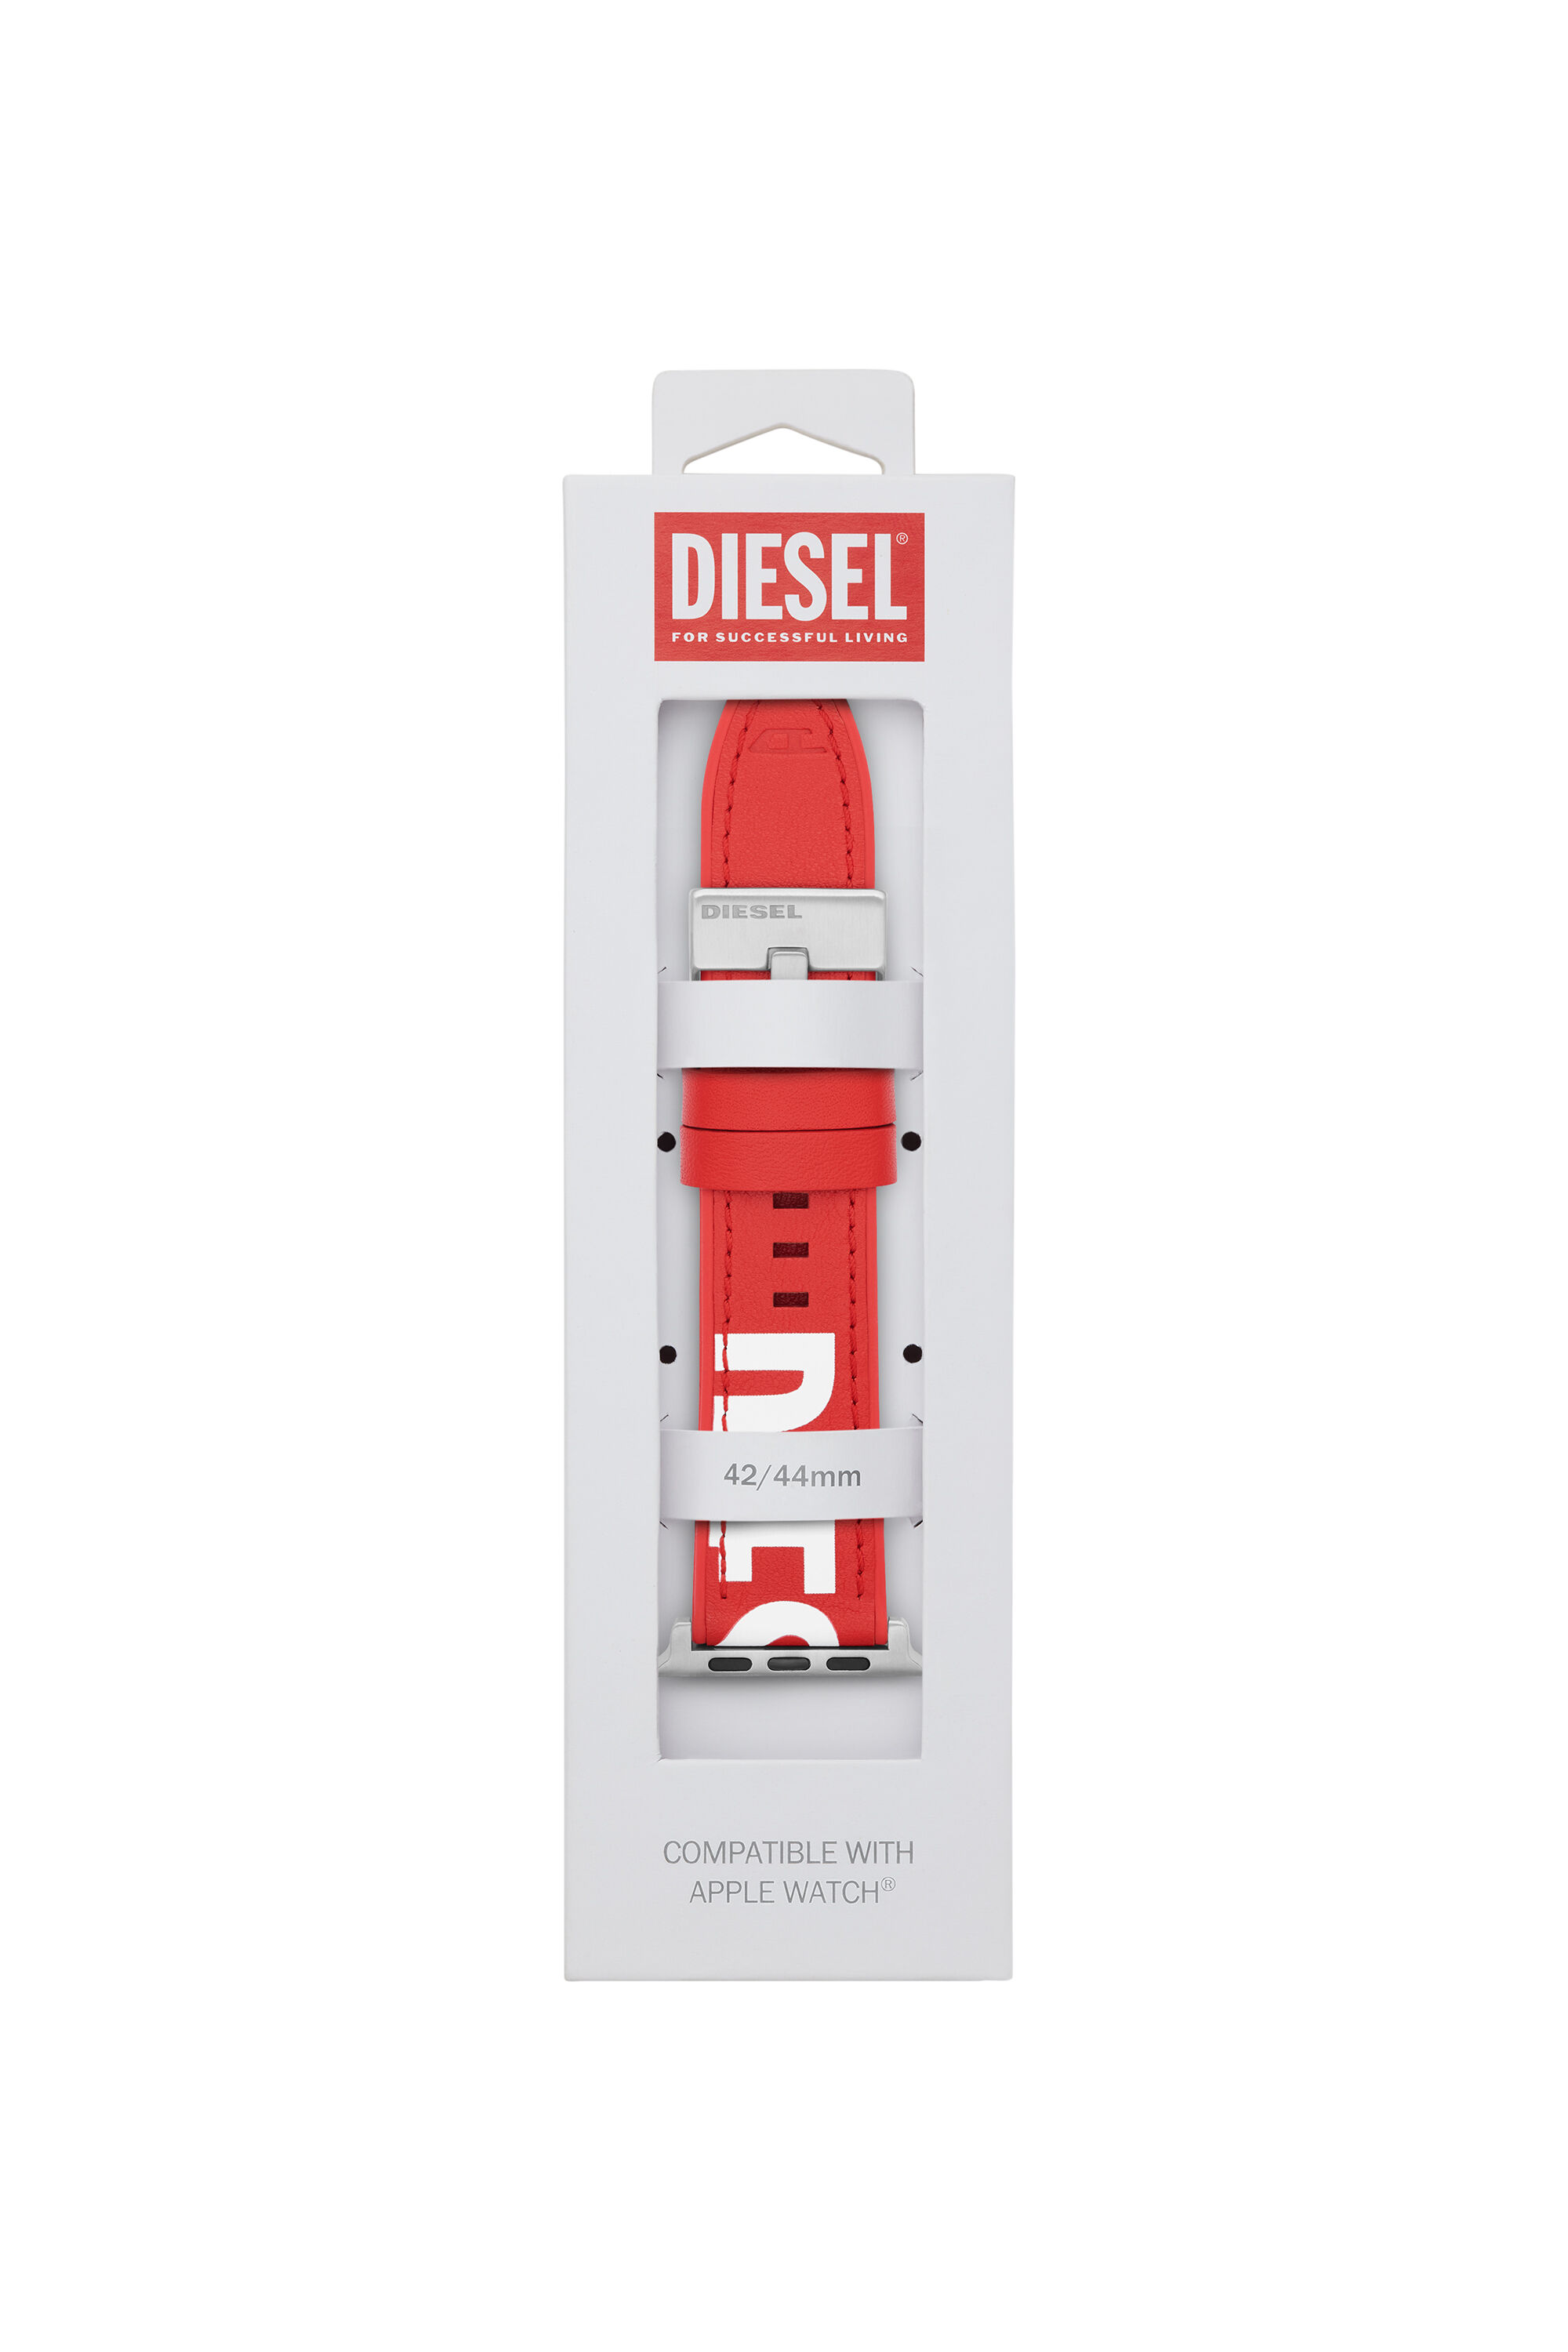 Diesel - DSS003, Red - Image 2